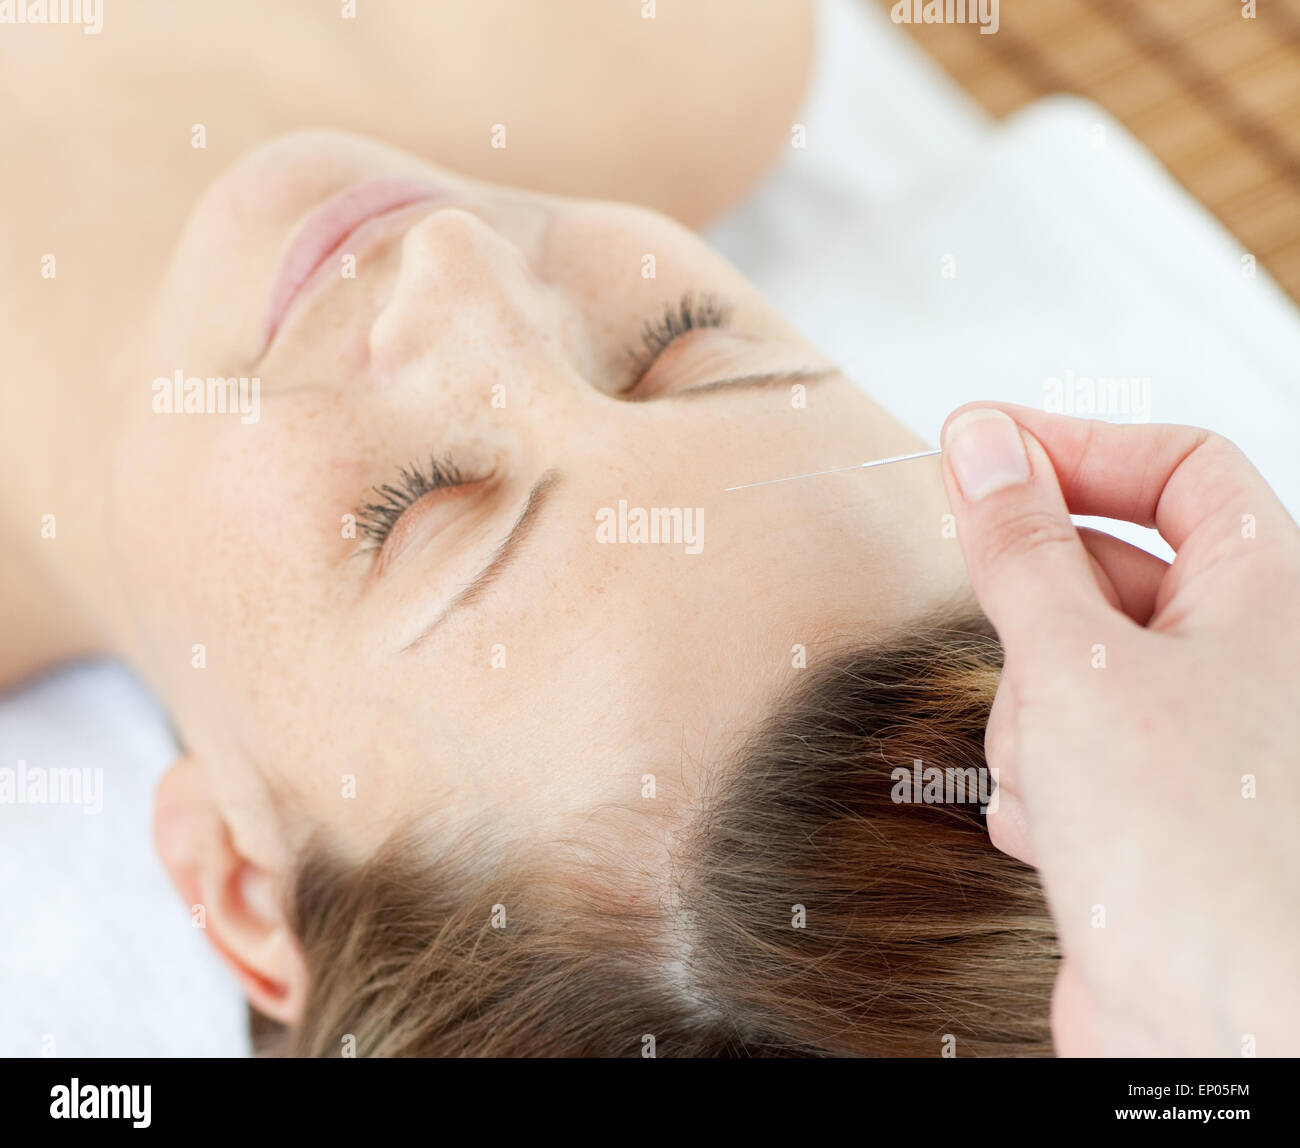 Akupunkturnadeln auf eine attraktive Frau Kopf Stockfoto